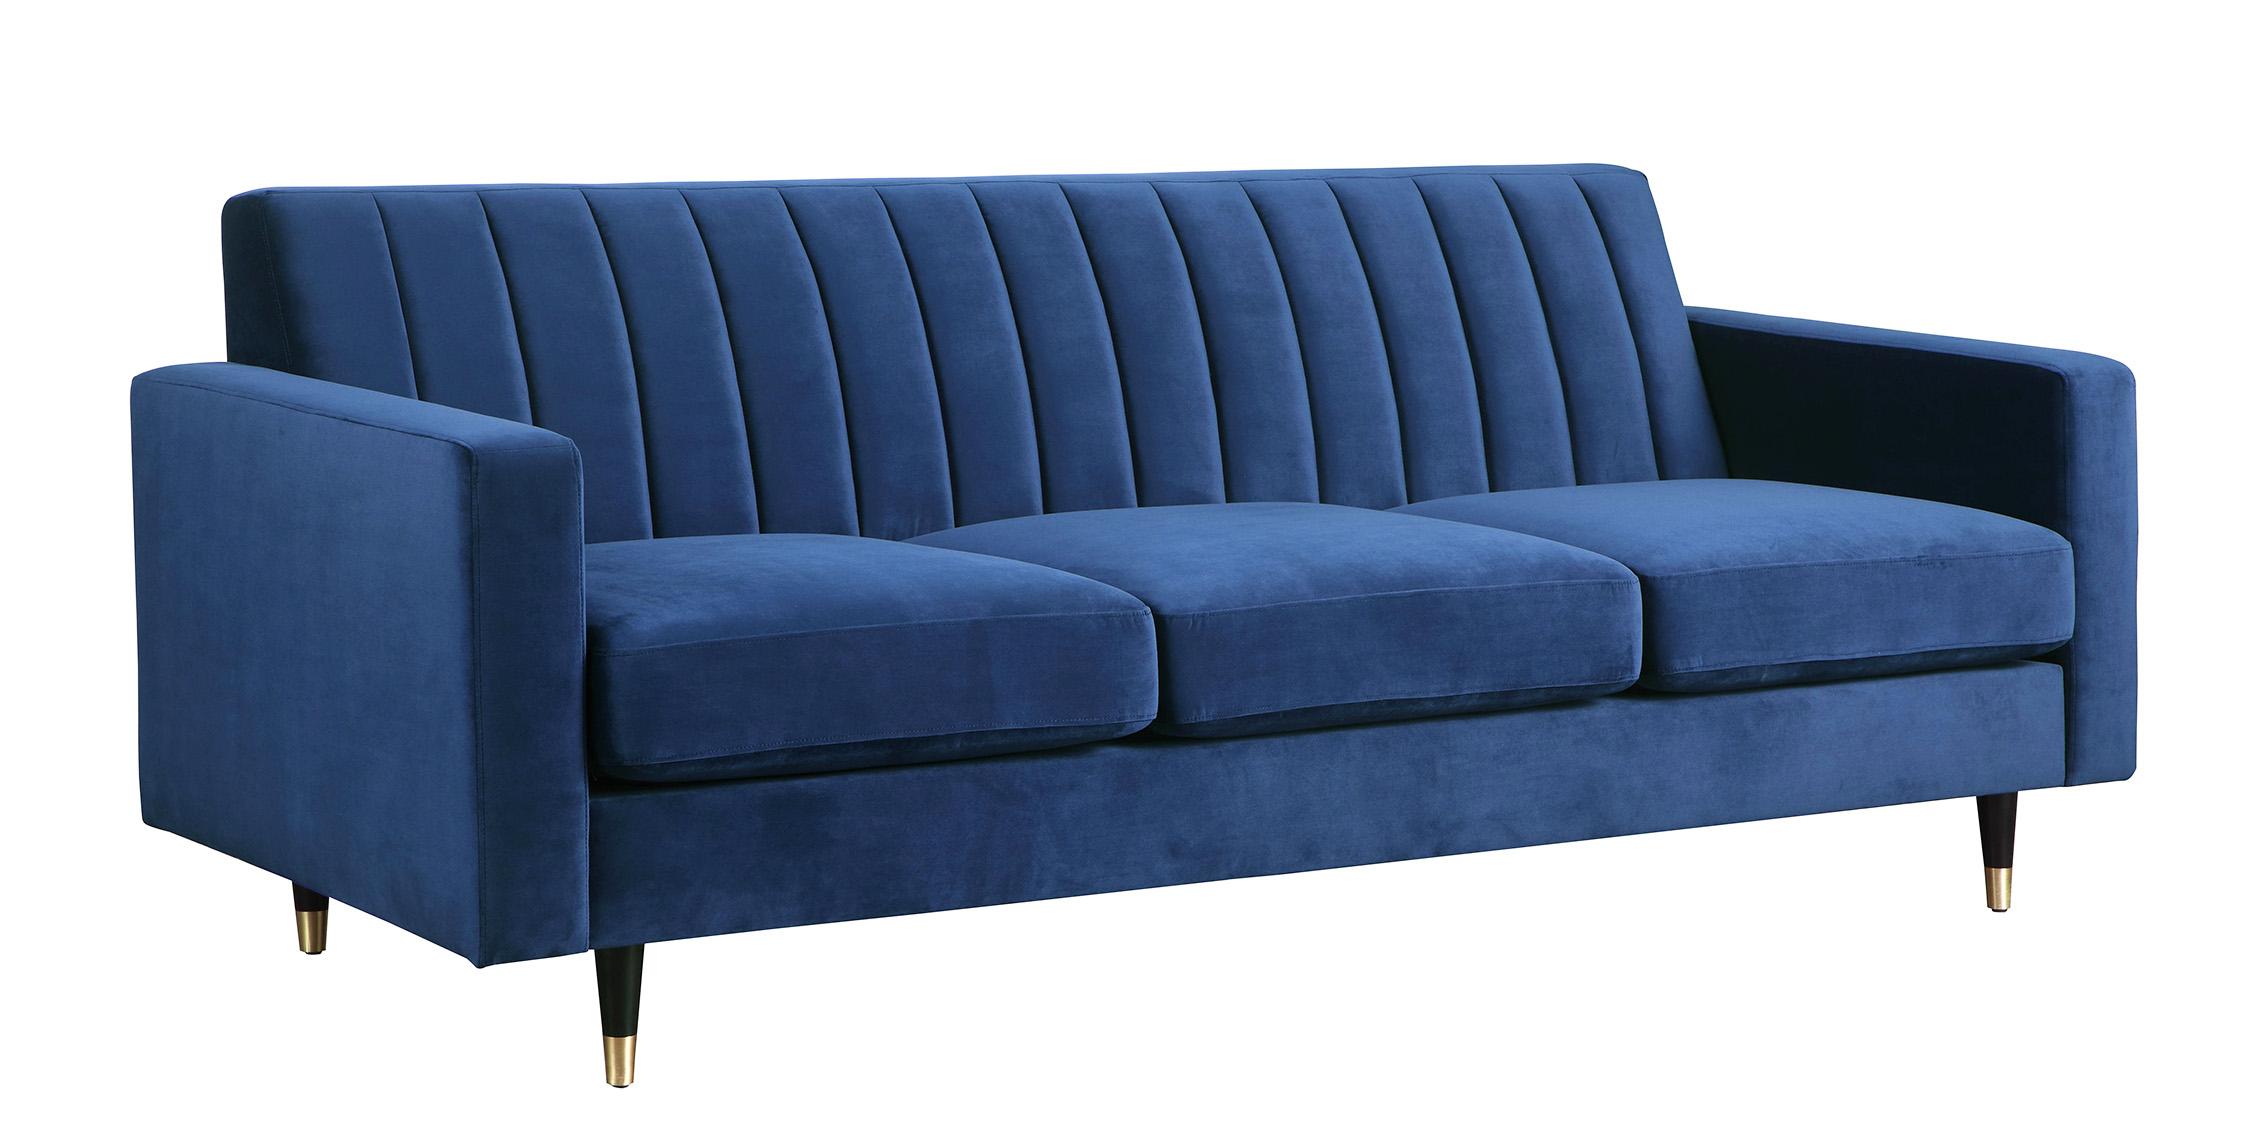 Modern, Classic Sofa LOLA 619Navy-S 619Navy-S in Navy blue Velvet